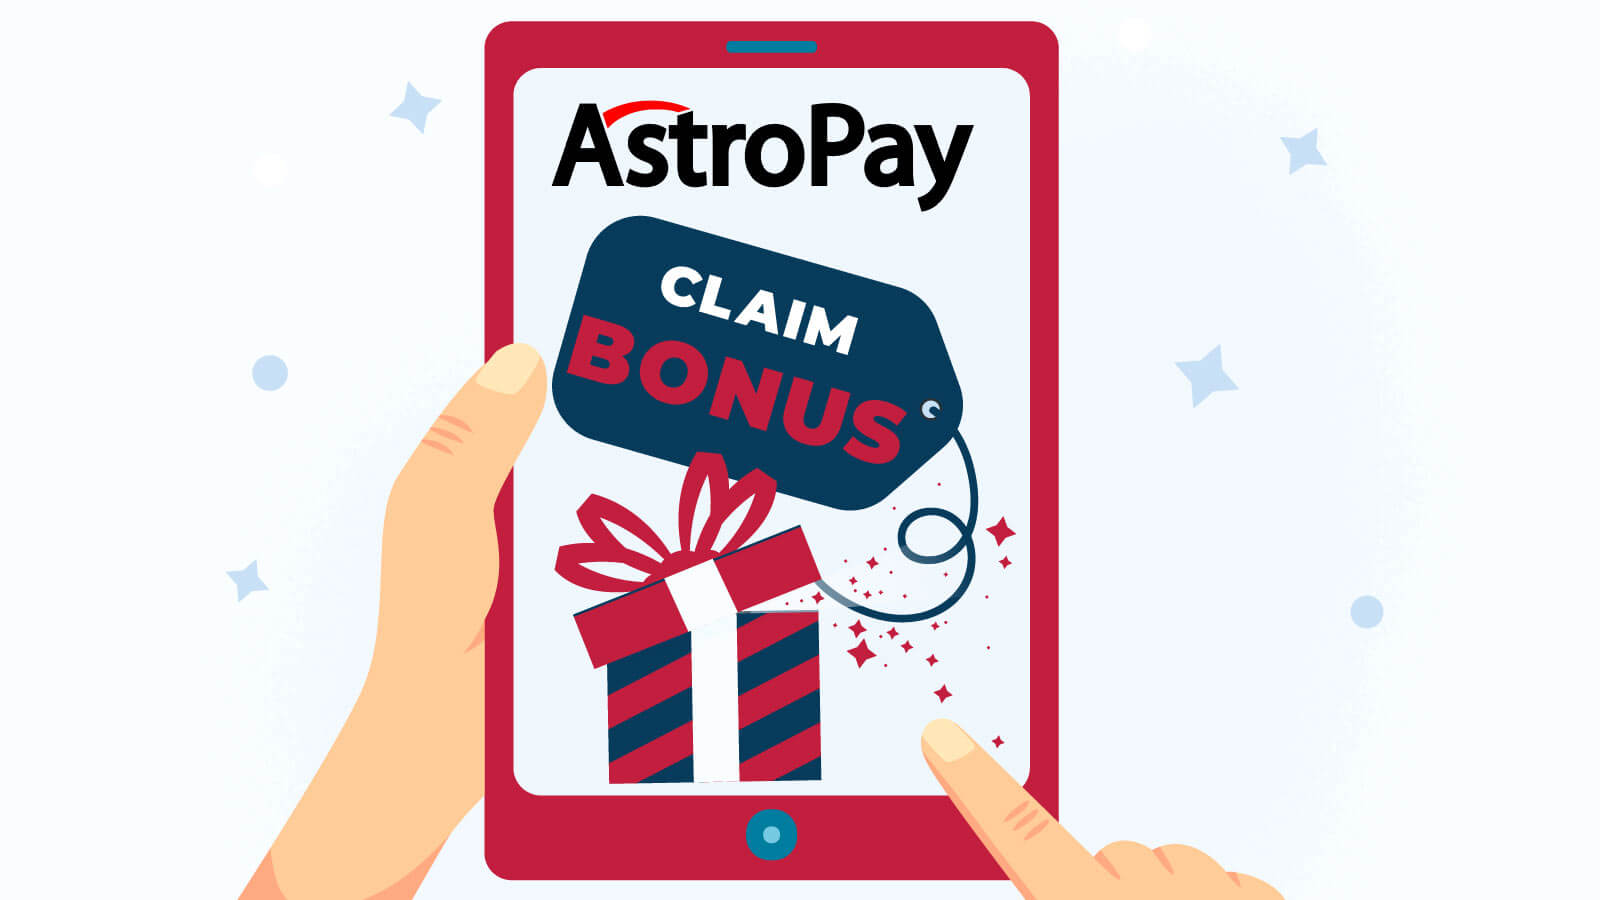 Can You Claim Bonuses with an Astropay Card